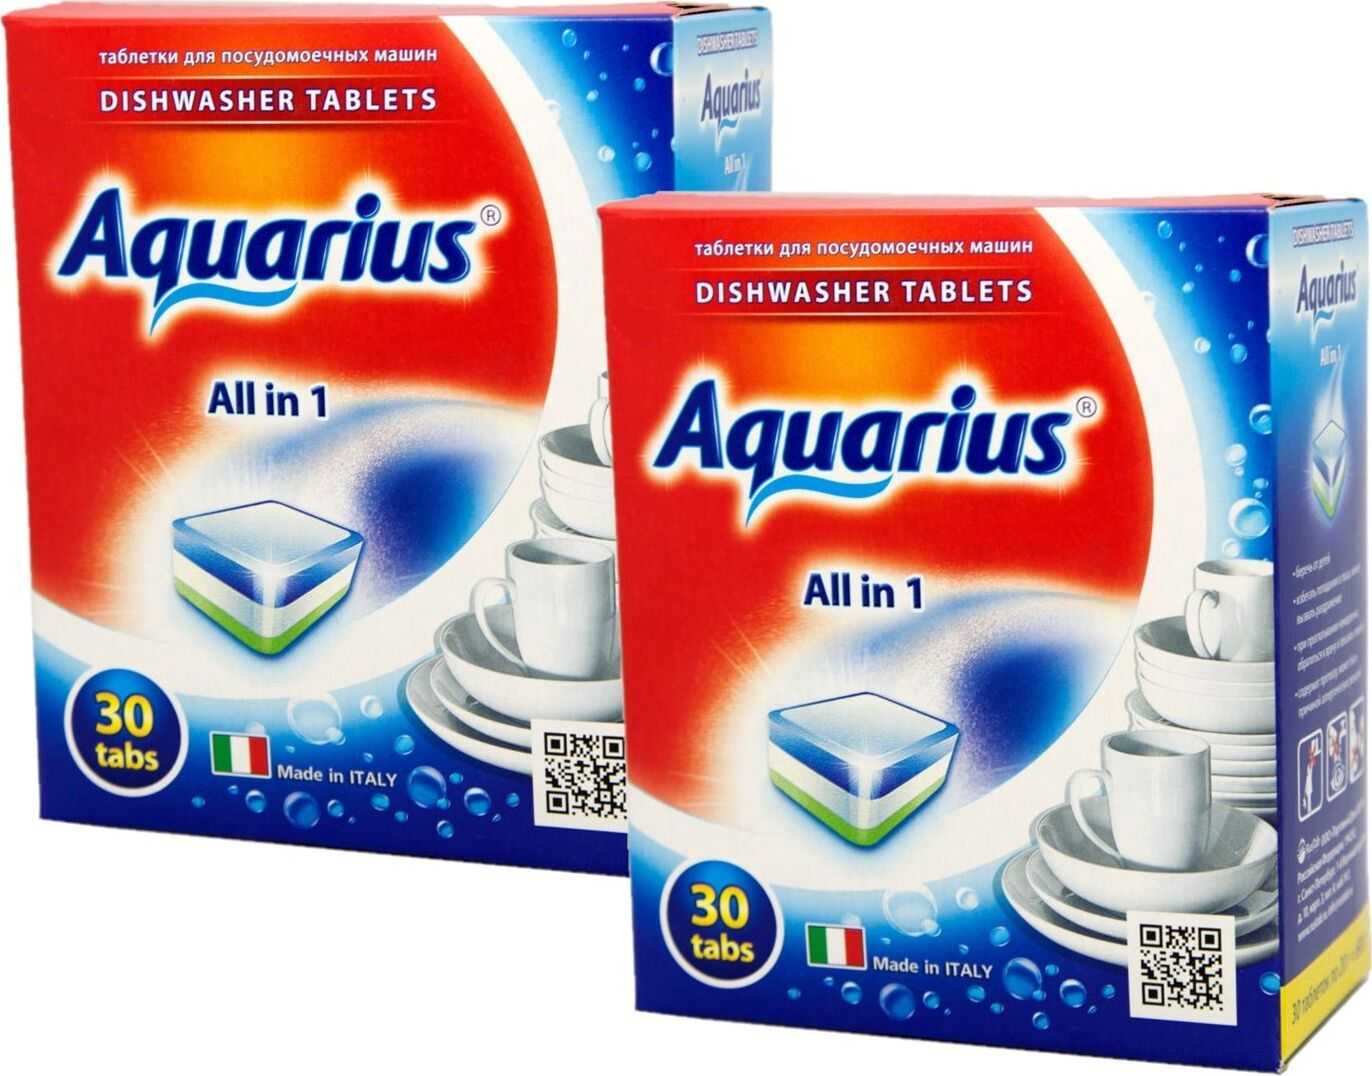 Таблетки для посудомоечной машинки. Таблетки для посудомоечных машин Aquarius all in 1 (Midi) 30 шт. Аквариус таблетки для посудомойки. Таблетки Aquarius для ПММ all in1 60 таб. Таблетки для ПММ Aquarius.